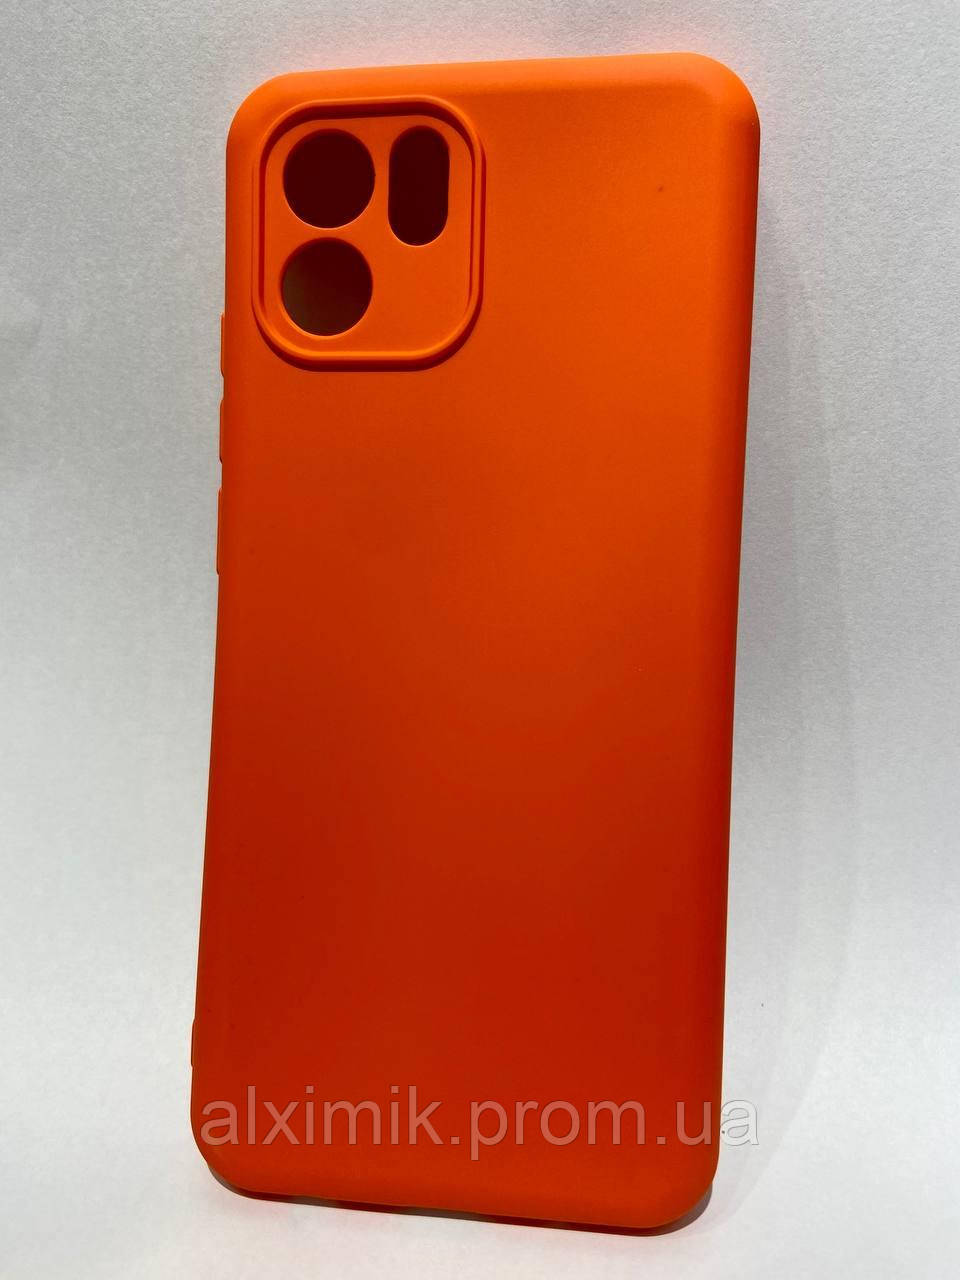 Защитный чехол  для Redmi A1 MiaMi Lite Orange  яркий оранжевый